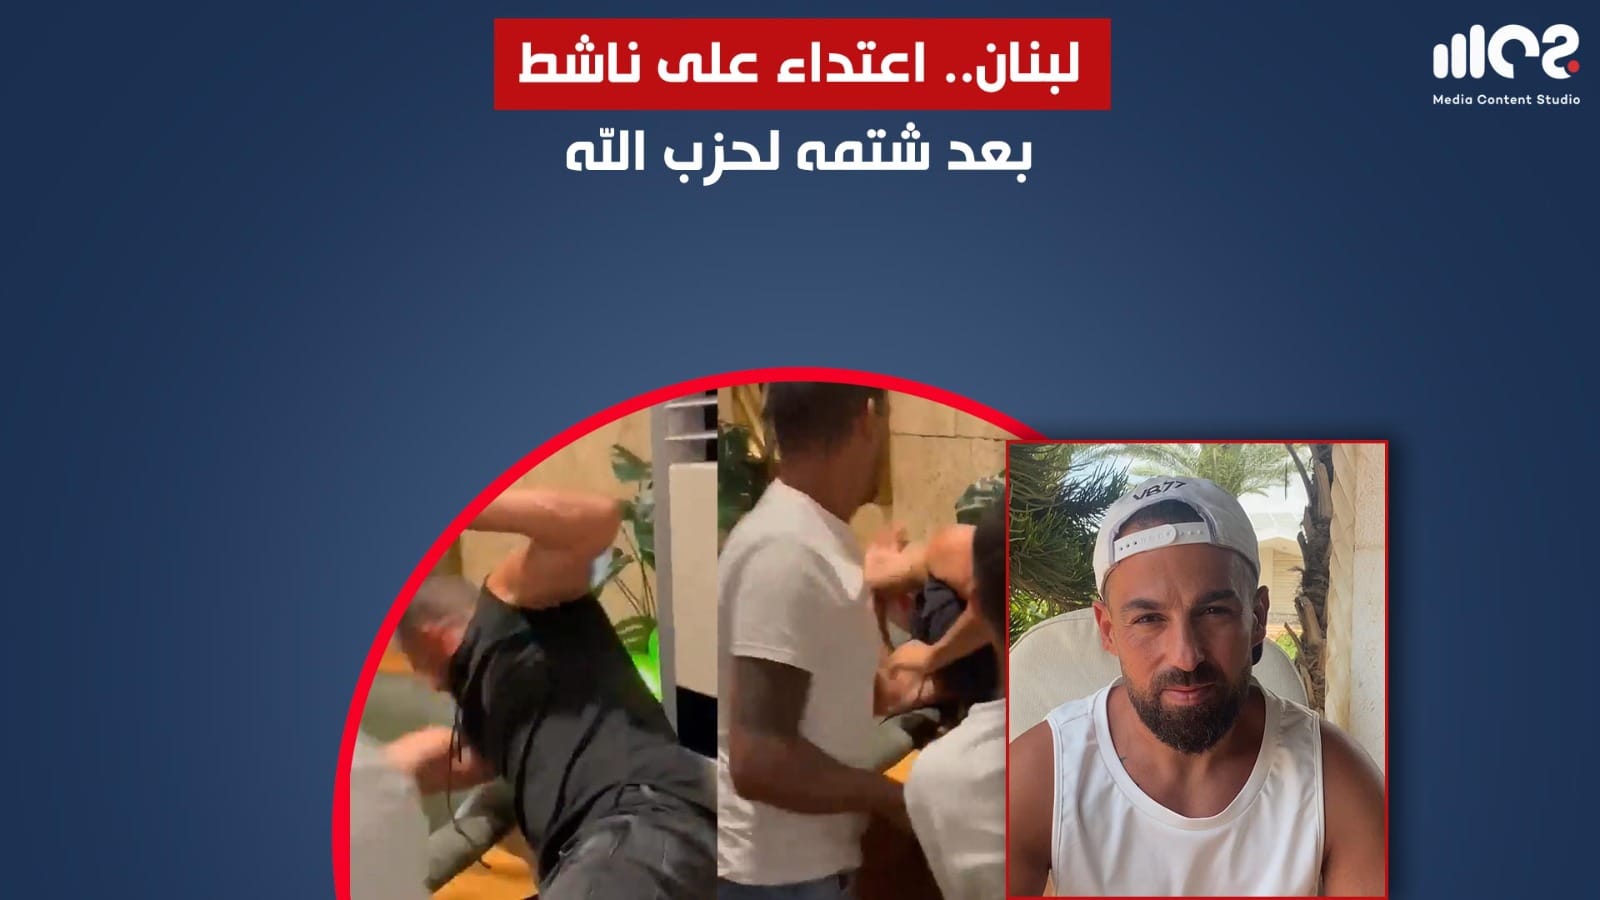 لبنان: اعتداء على ناشط بعد شتمه لحزب الله